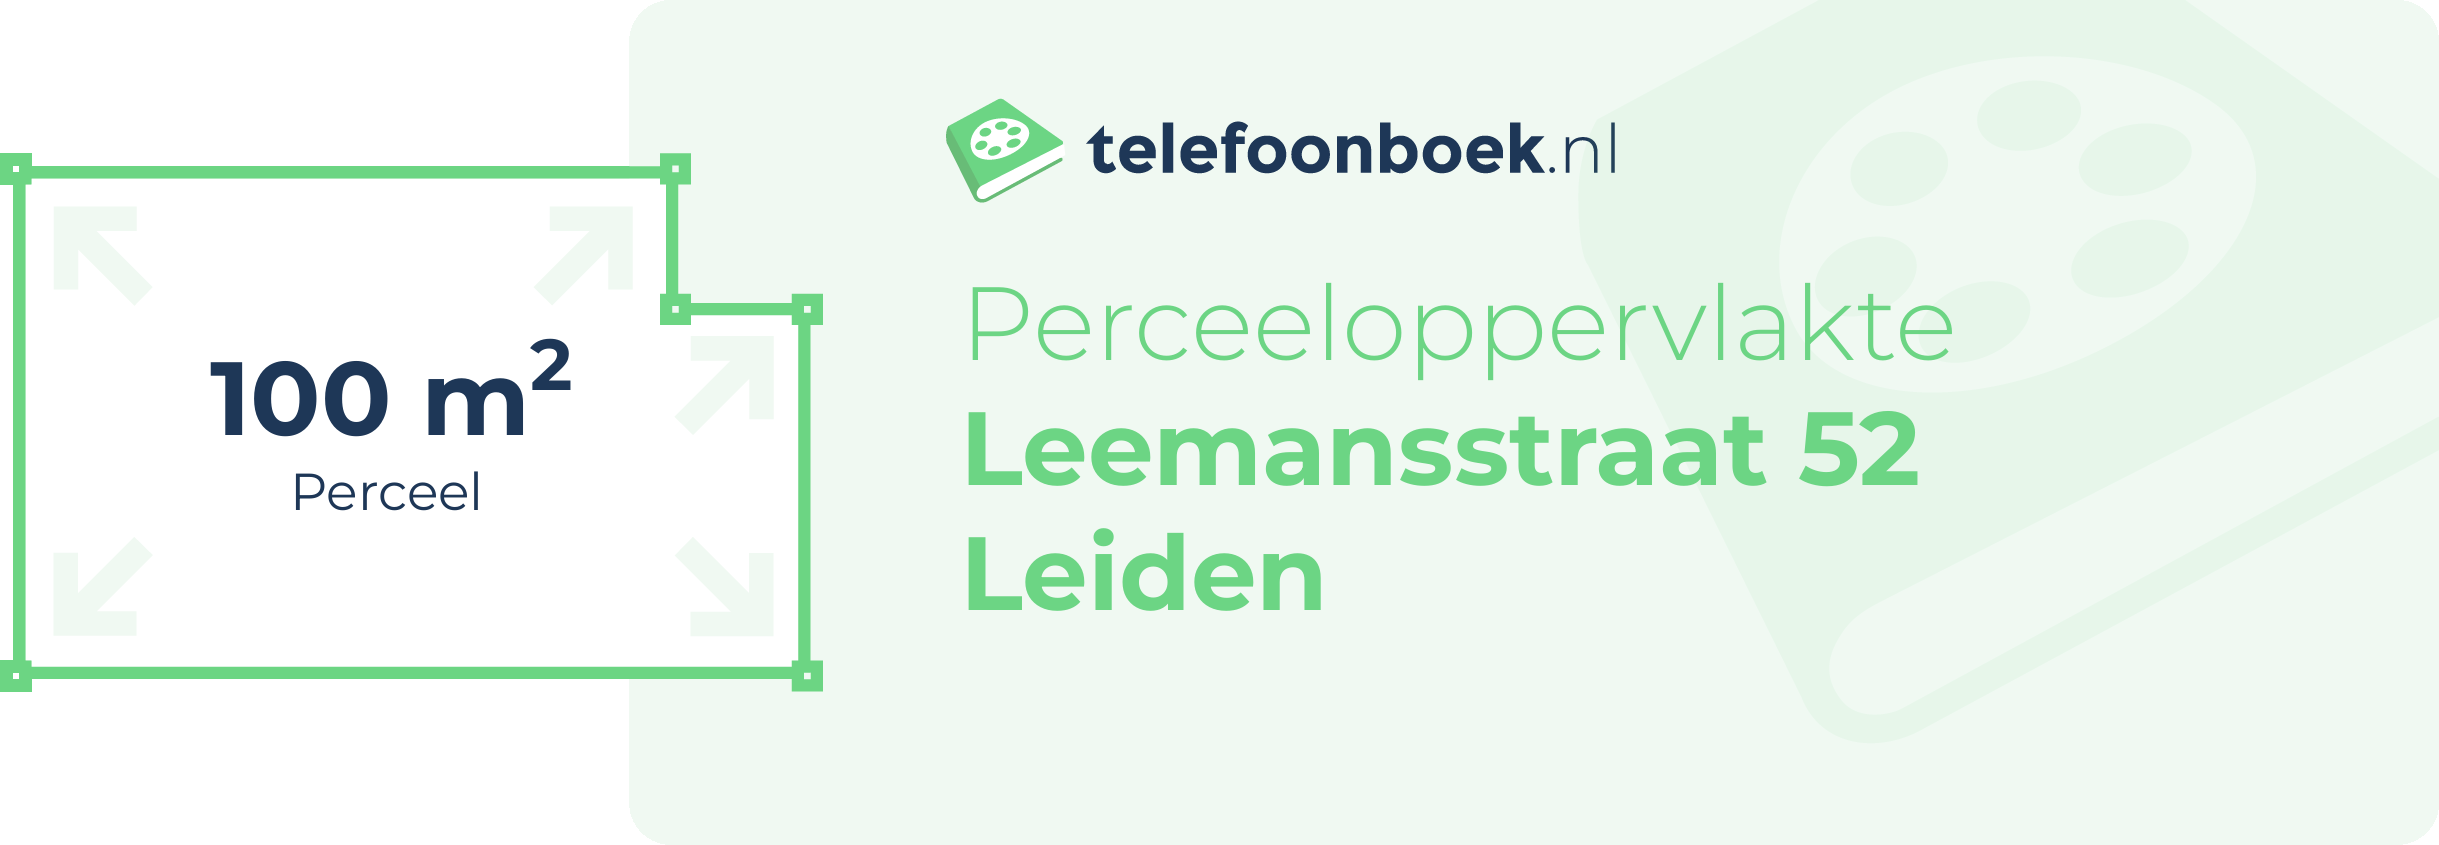 Perceeloppervlakte Leemansstraat 52 Leiden